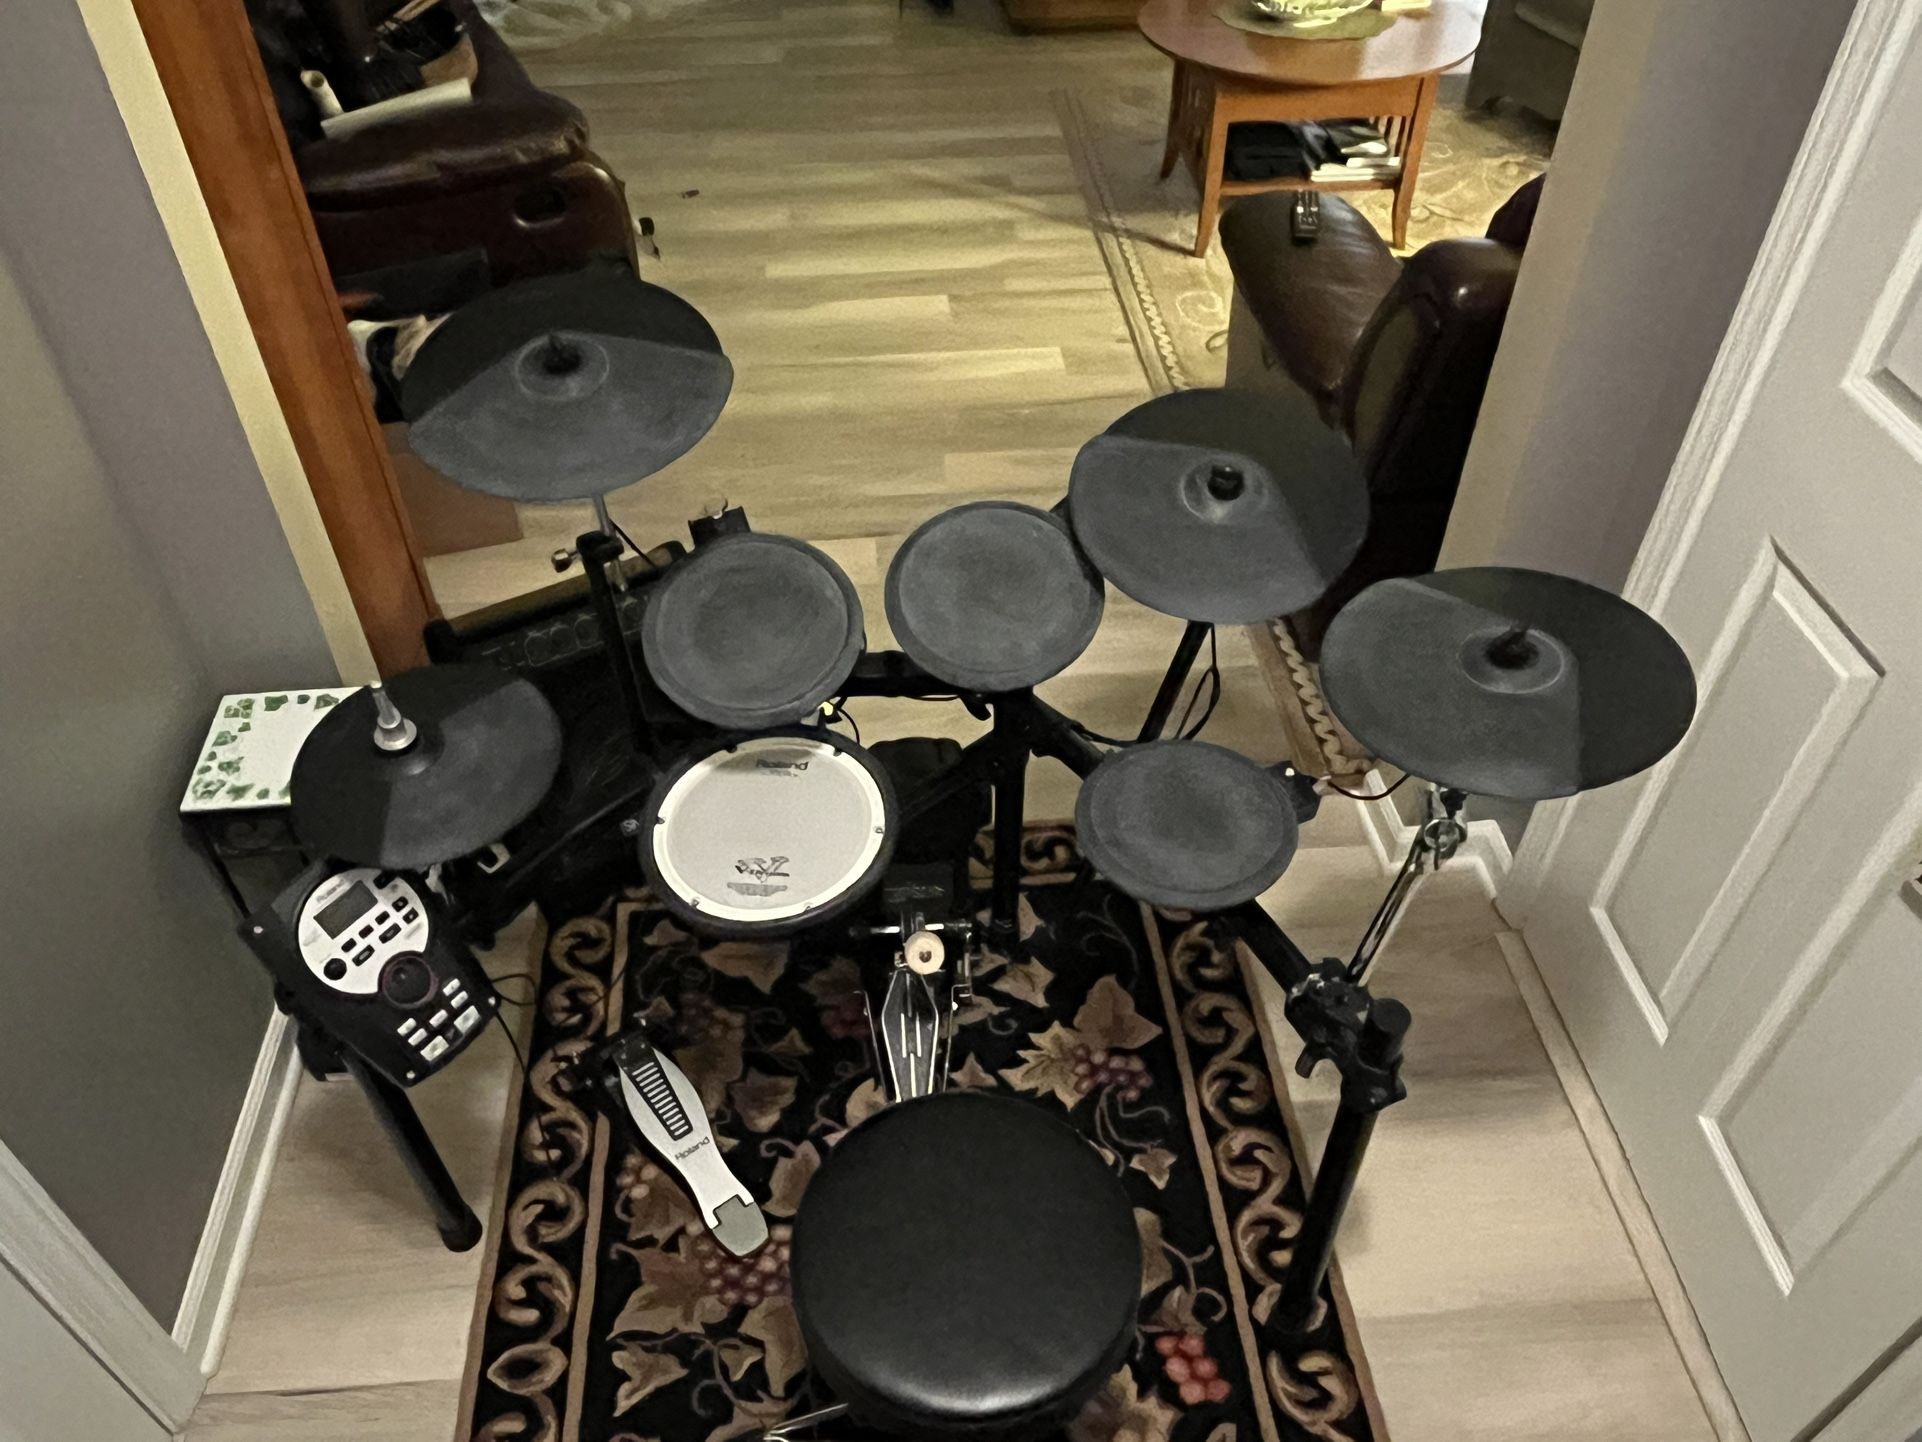 Roland TD-11 V-drums